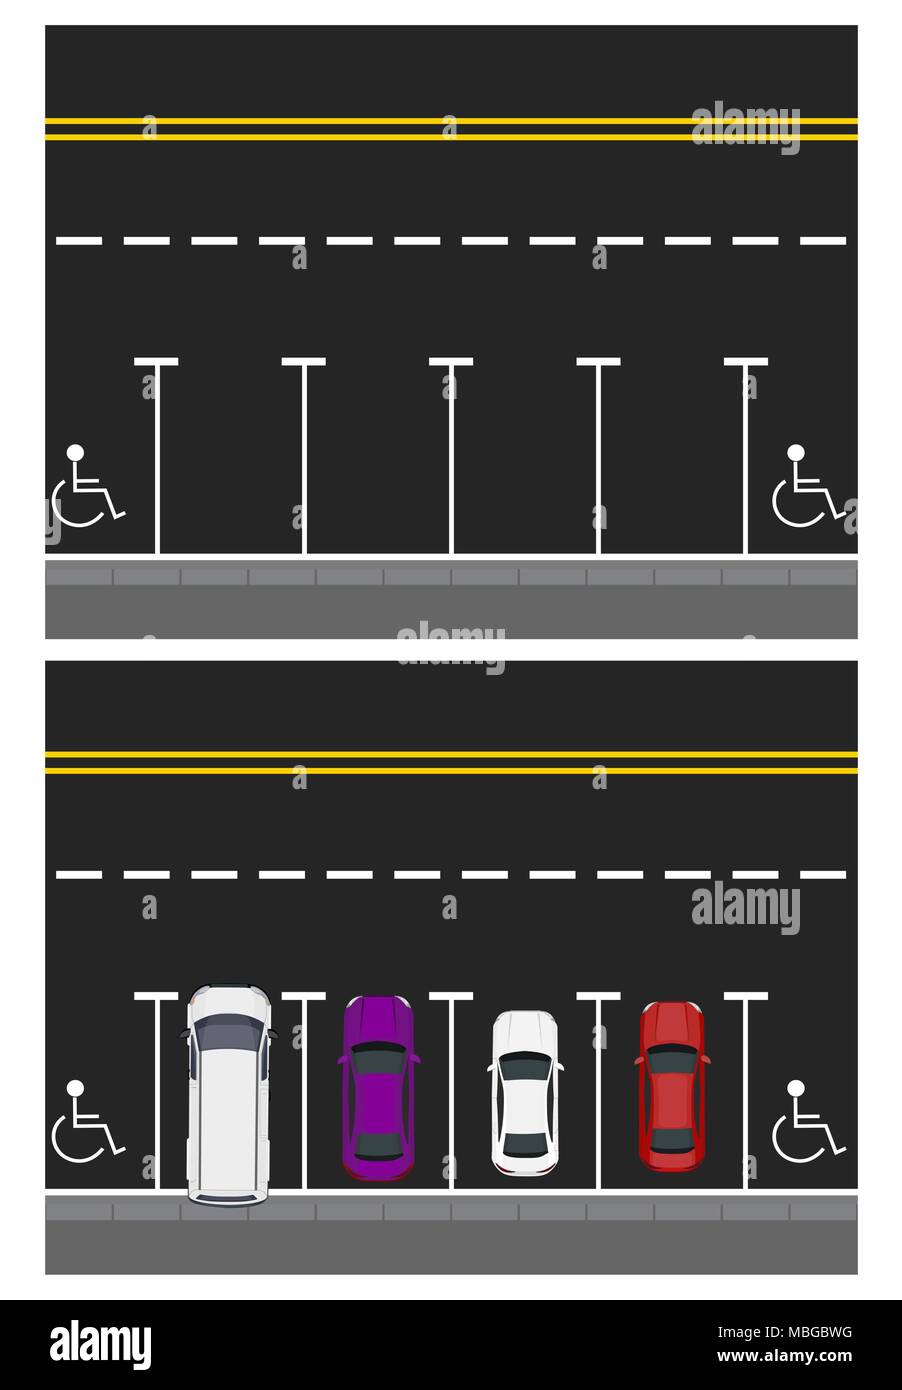 Zwei Bilder. Farbige geparkten Autos, Straße, Ansicht von oben. freie Plätze, Orte, die für Menschen mit Behinderung. Abbildung Stock Vektor